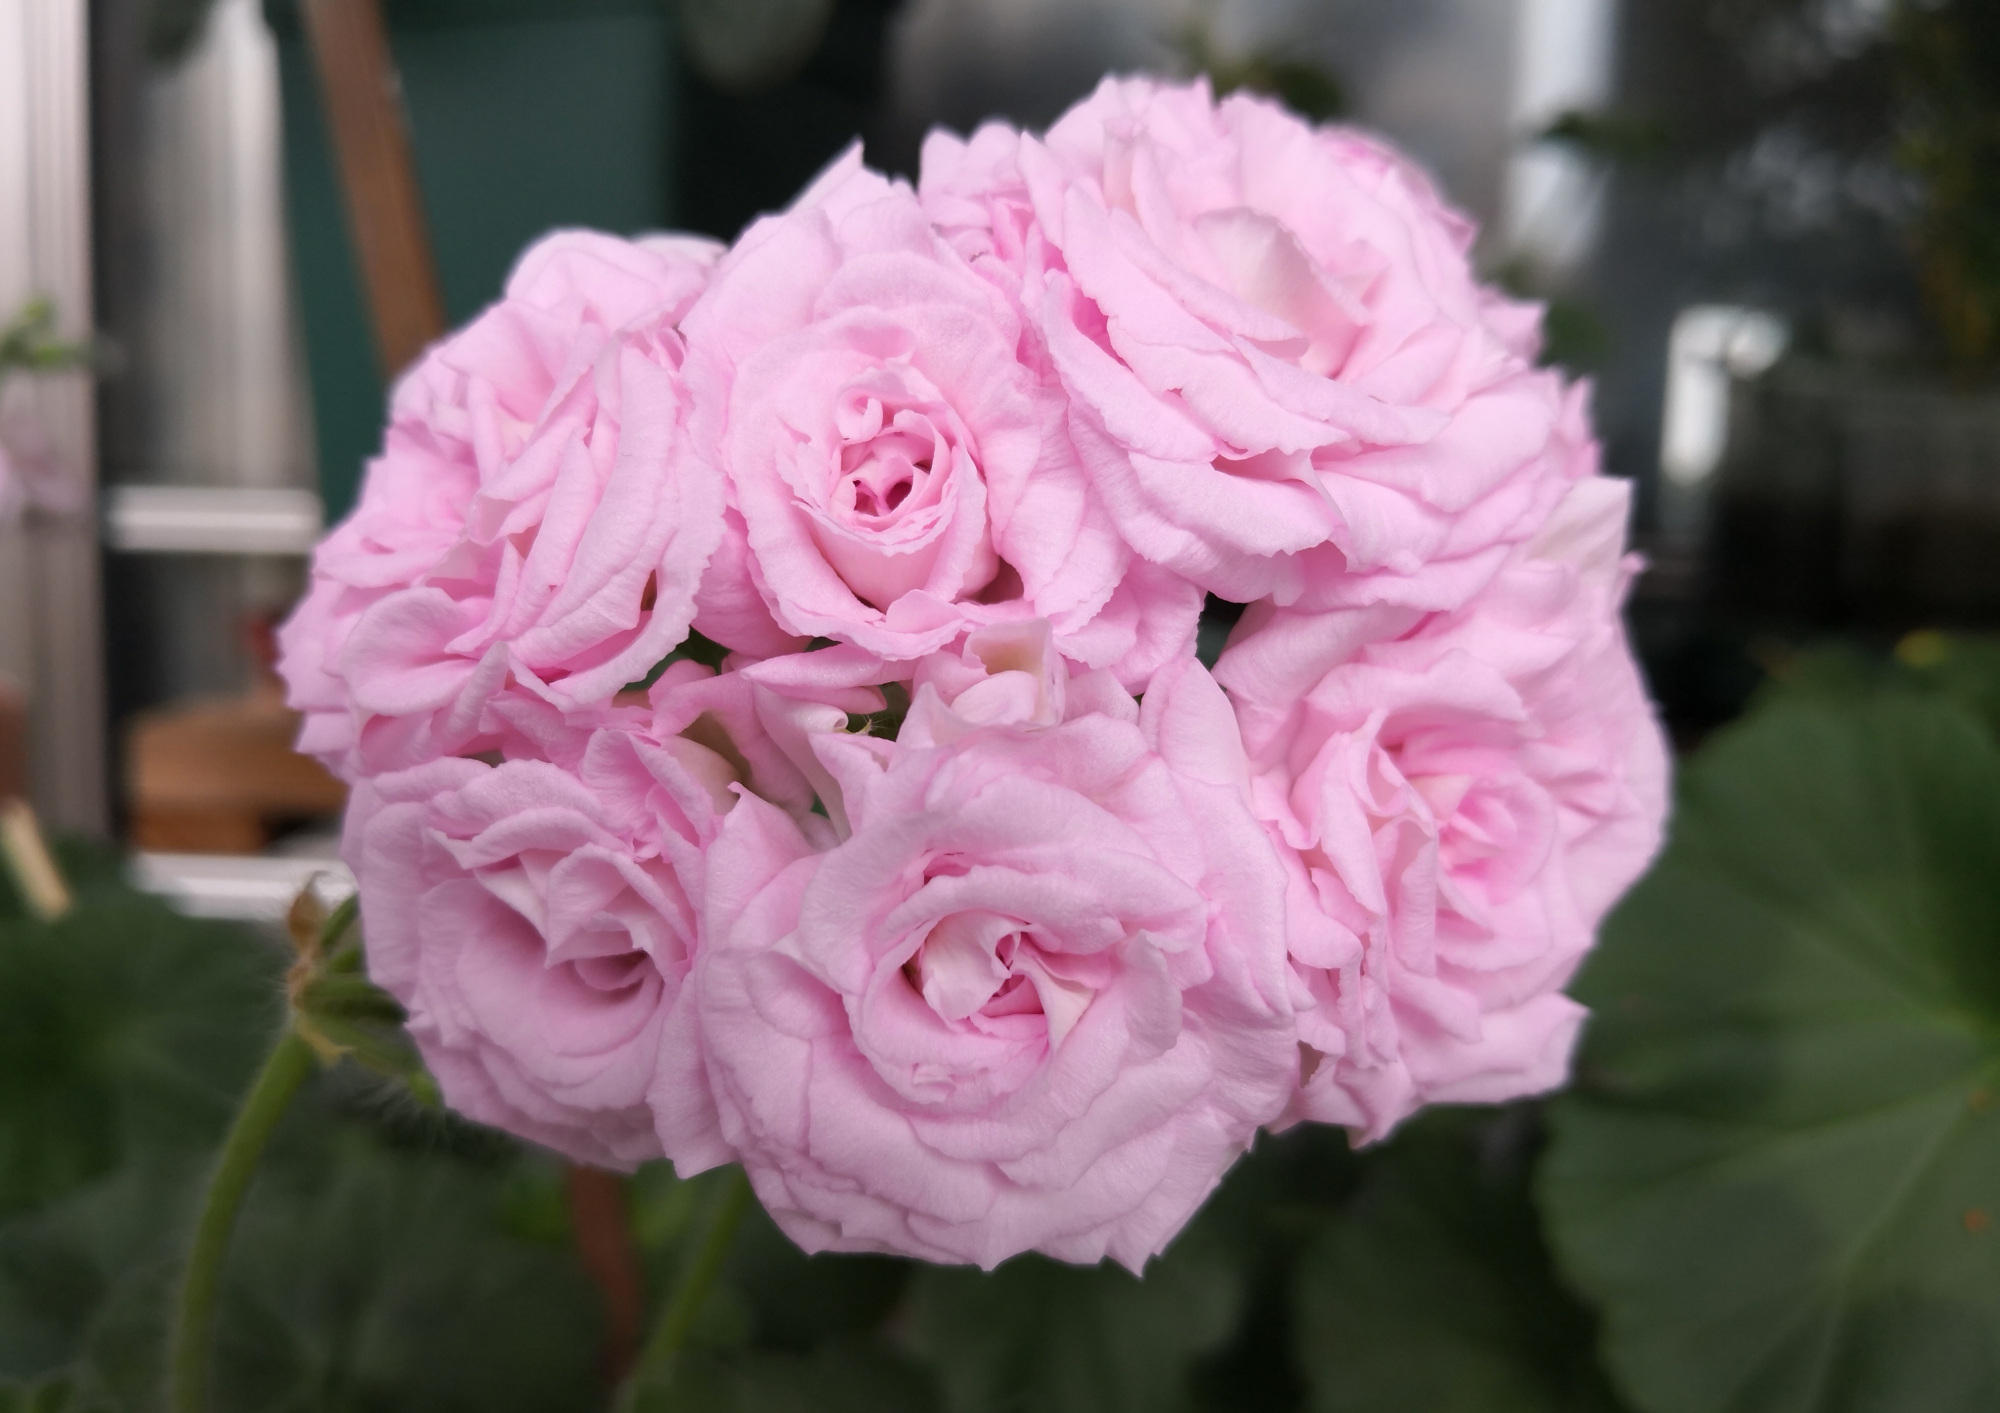 天竺葵白鼠—花美若玫瑰,丰花勤花,栽培简单,很值得拥有